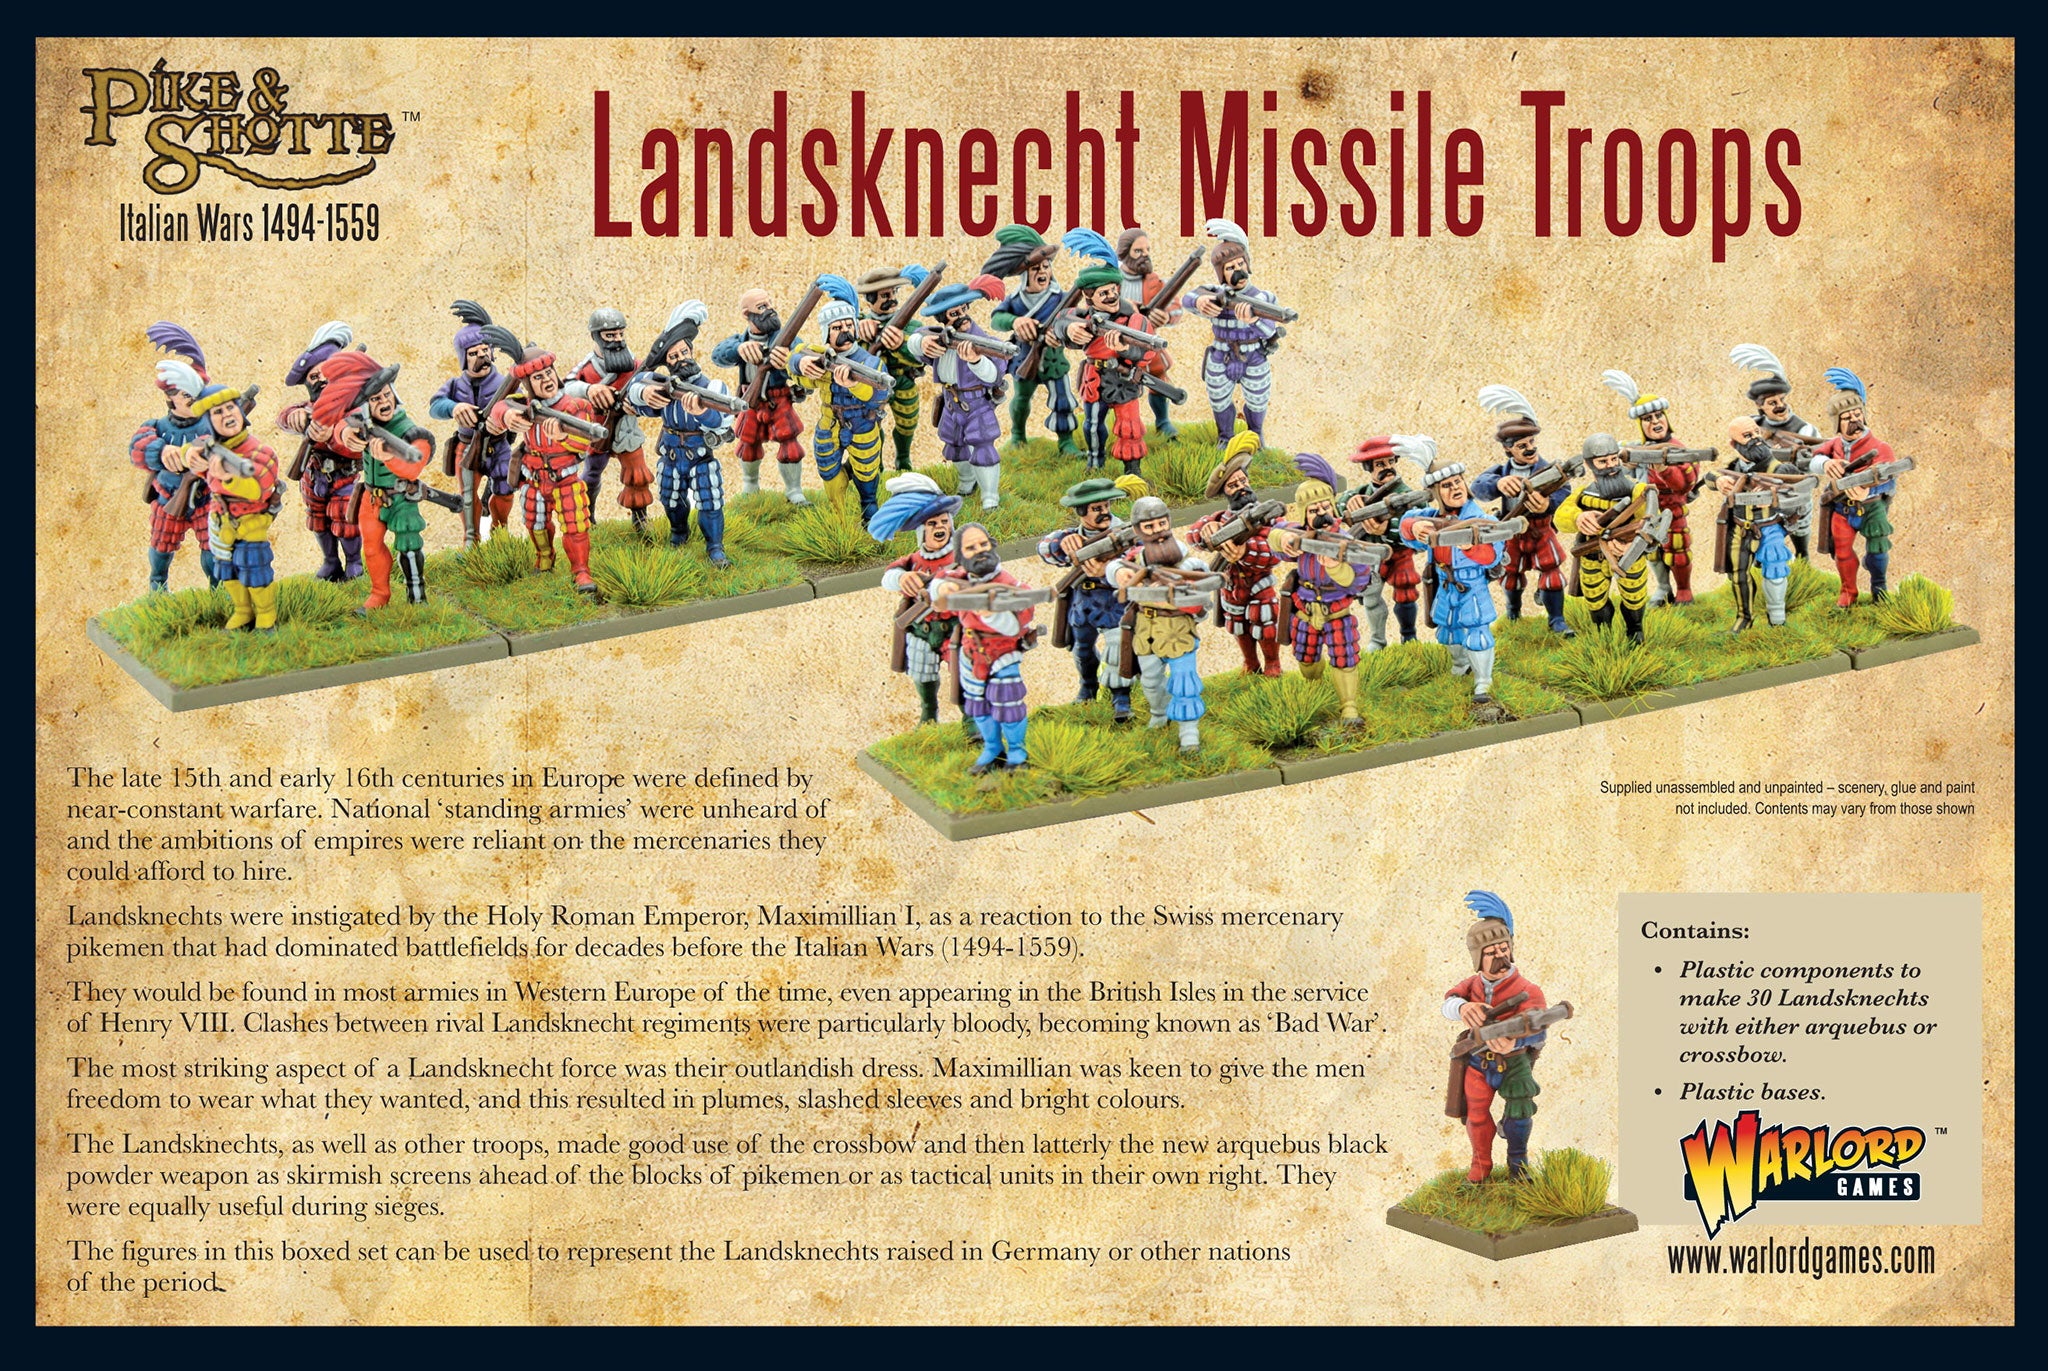 202016003-Landsknechts-missile-troops-bo